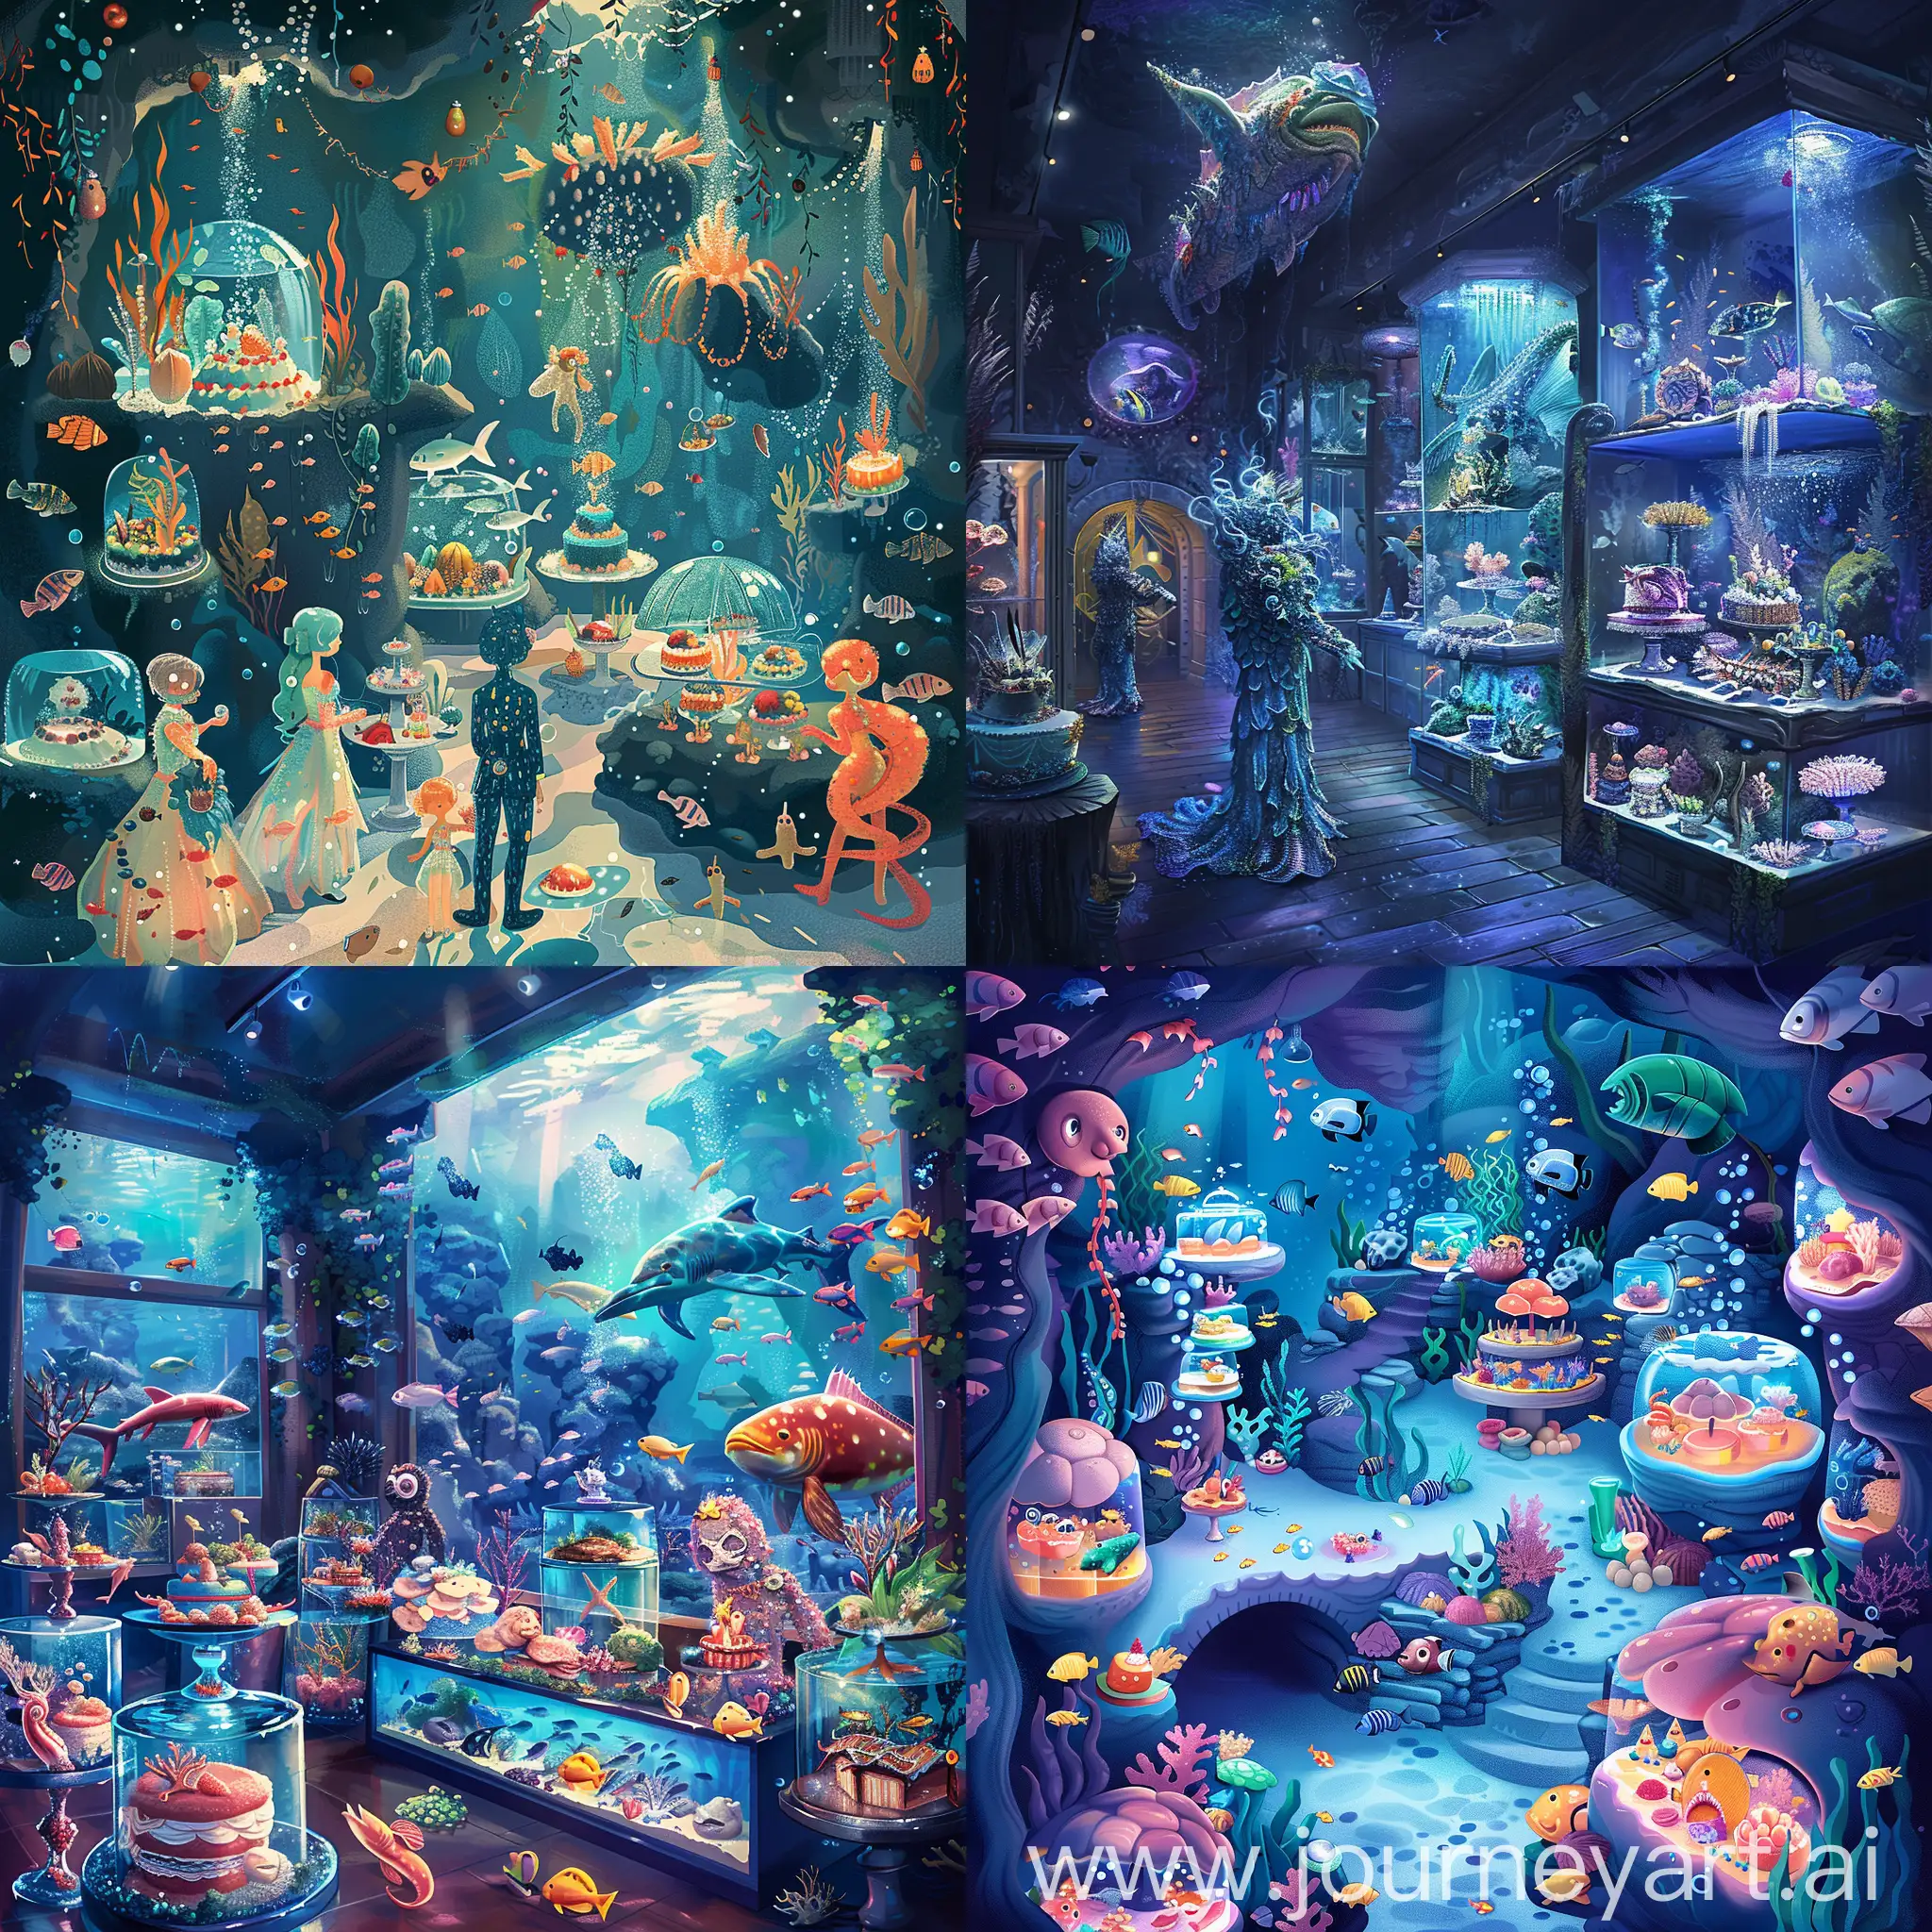 Иллюстрация::1.1, аквариумная вечеринки, помещение в стиле подводного мира, артисты в костюмах морских обитателей и организовать интерактивные зоны с аквариумами и рыбами, иллюстрация, праздничные тортами в виде морских обитателей, весь вечер будет наполнен атмосферой загадочности и волшебства под водой, --s 200